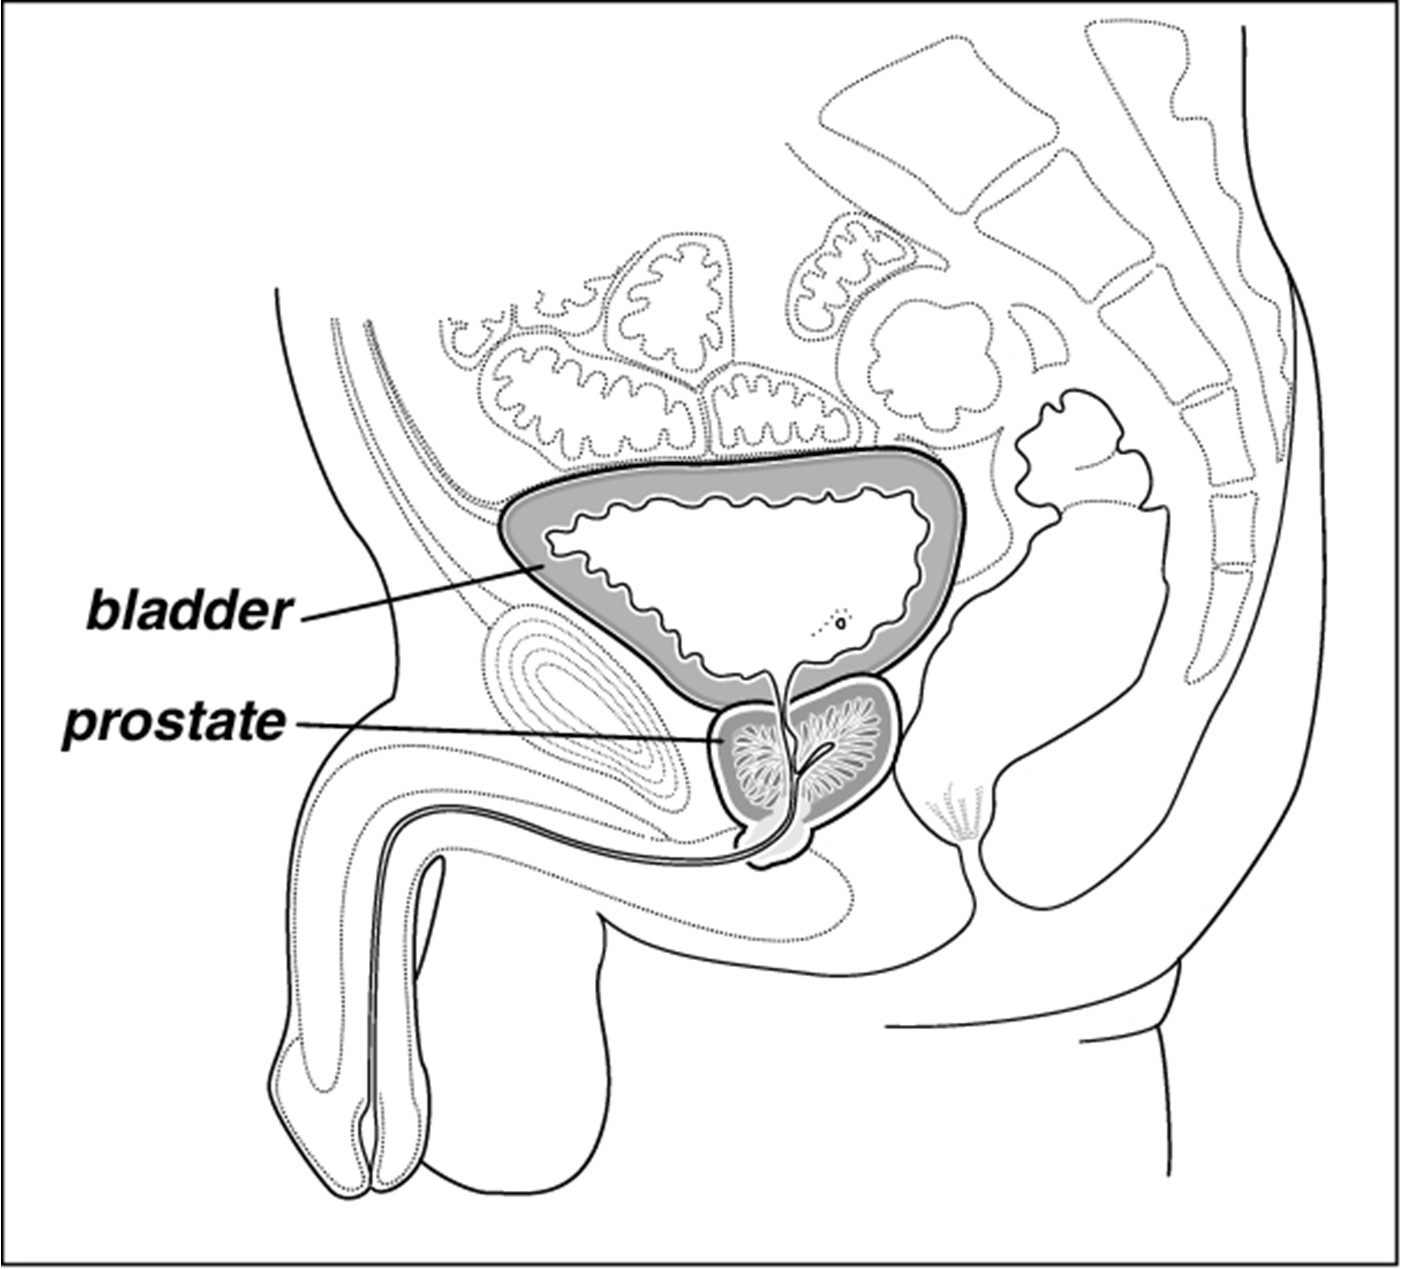 7530-Bladder, Prostate, Urethra